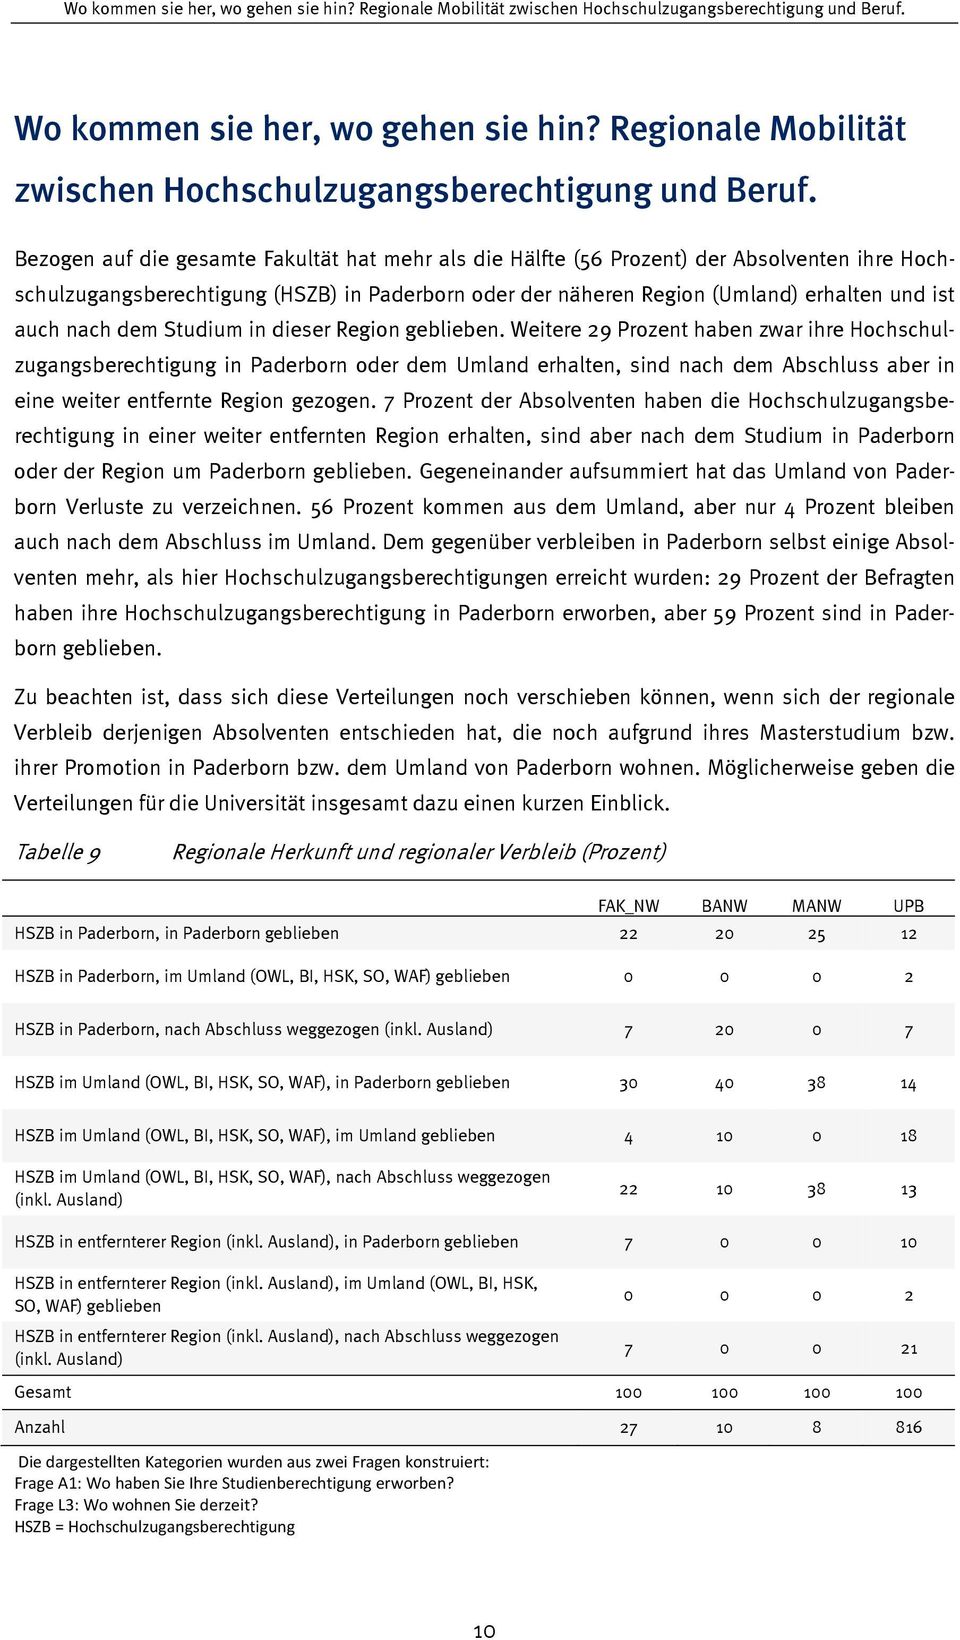 Bezogen auf die gesamte Fakultät hat mehr als die Hälfte (56 Prozent) der Absolventen ihre Hochschulzugangsberechtigung (HSZB) in Paderborn oder der näheren Region (Umland) erhalten und ist auch nach